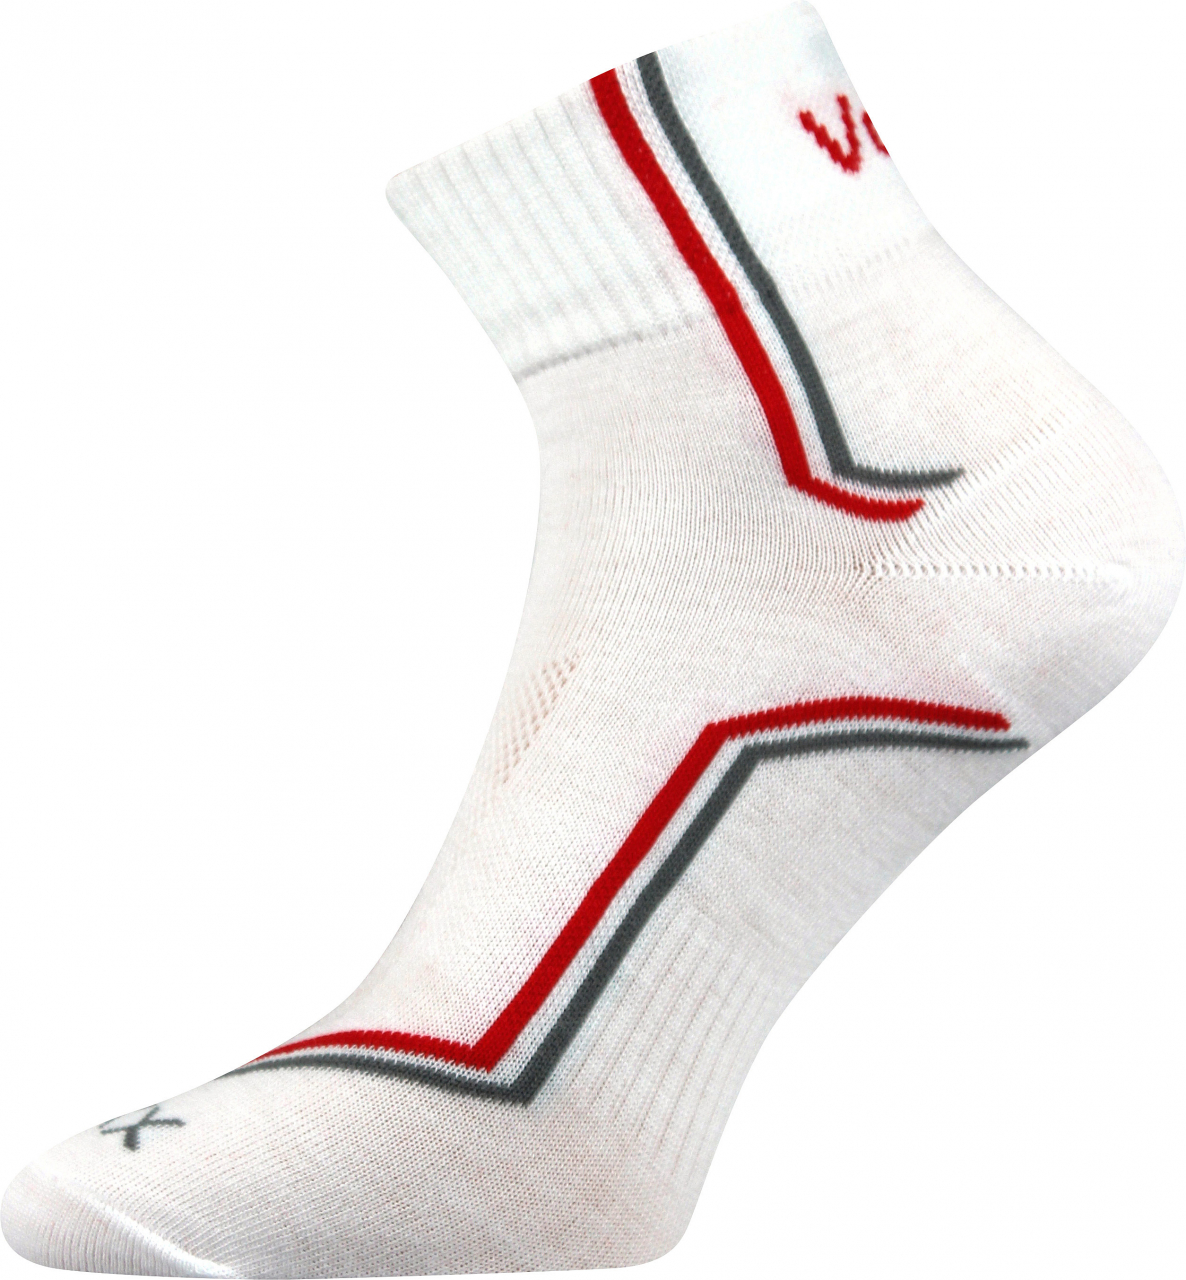 Ponožky sportovní Voxx Kroton silproX - bílé, 39-42